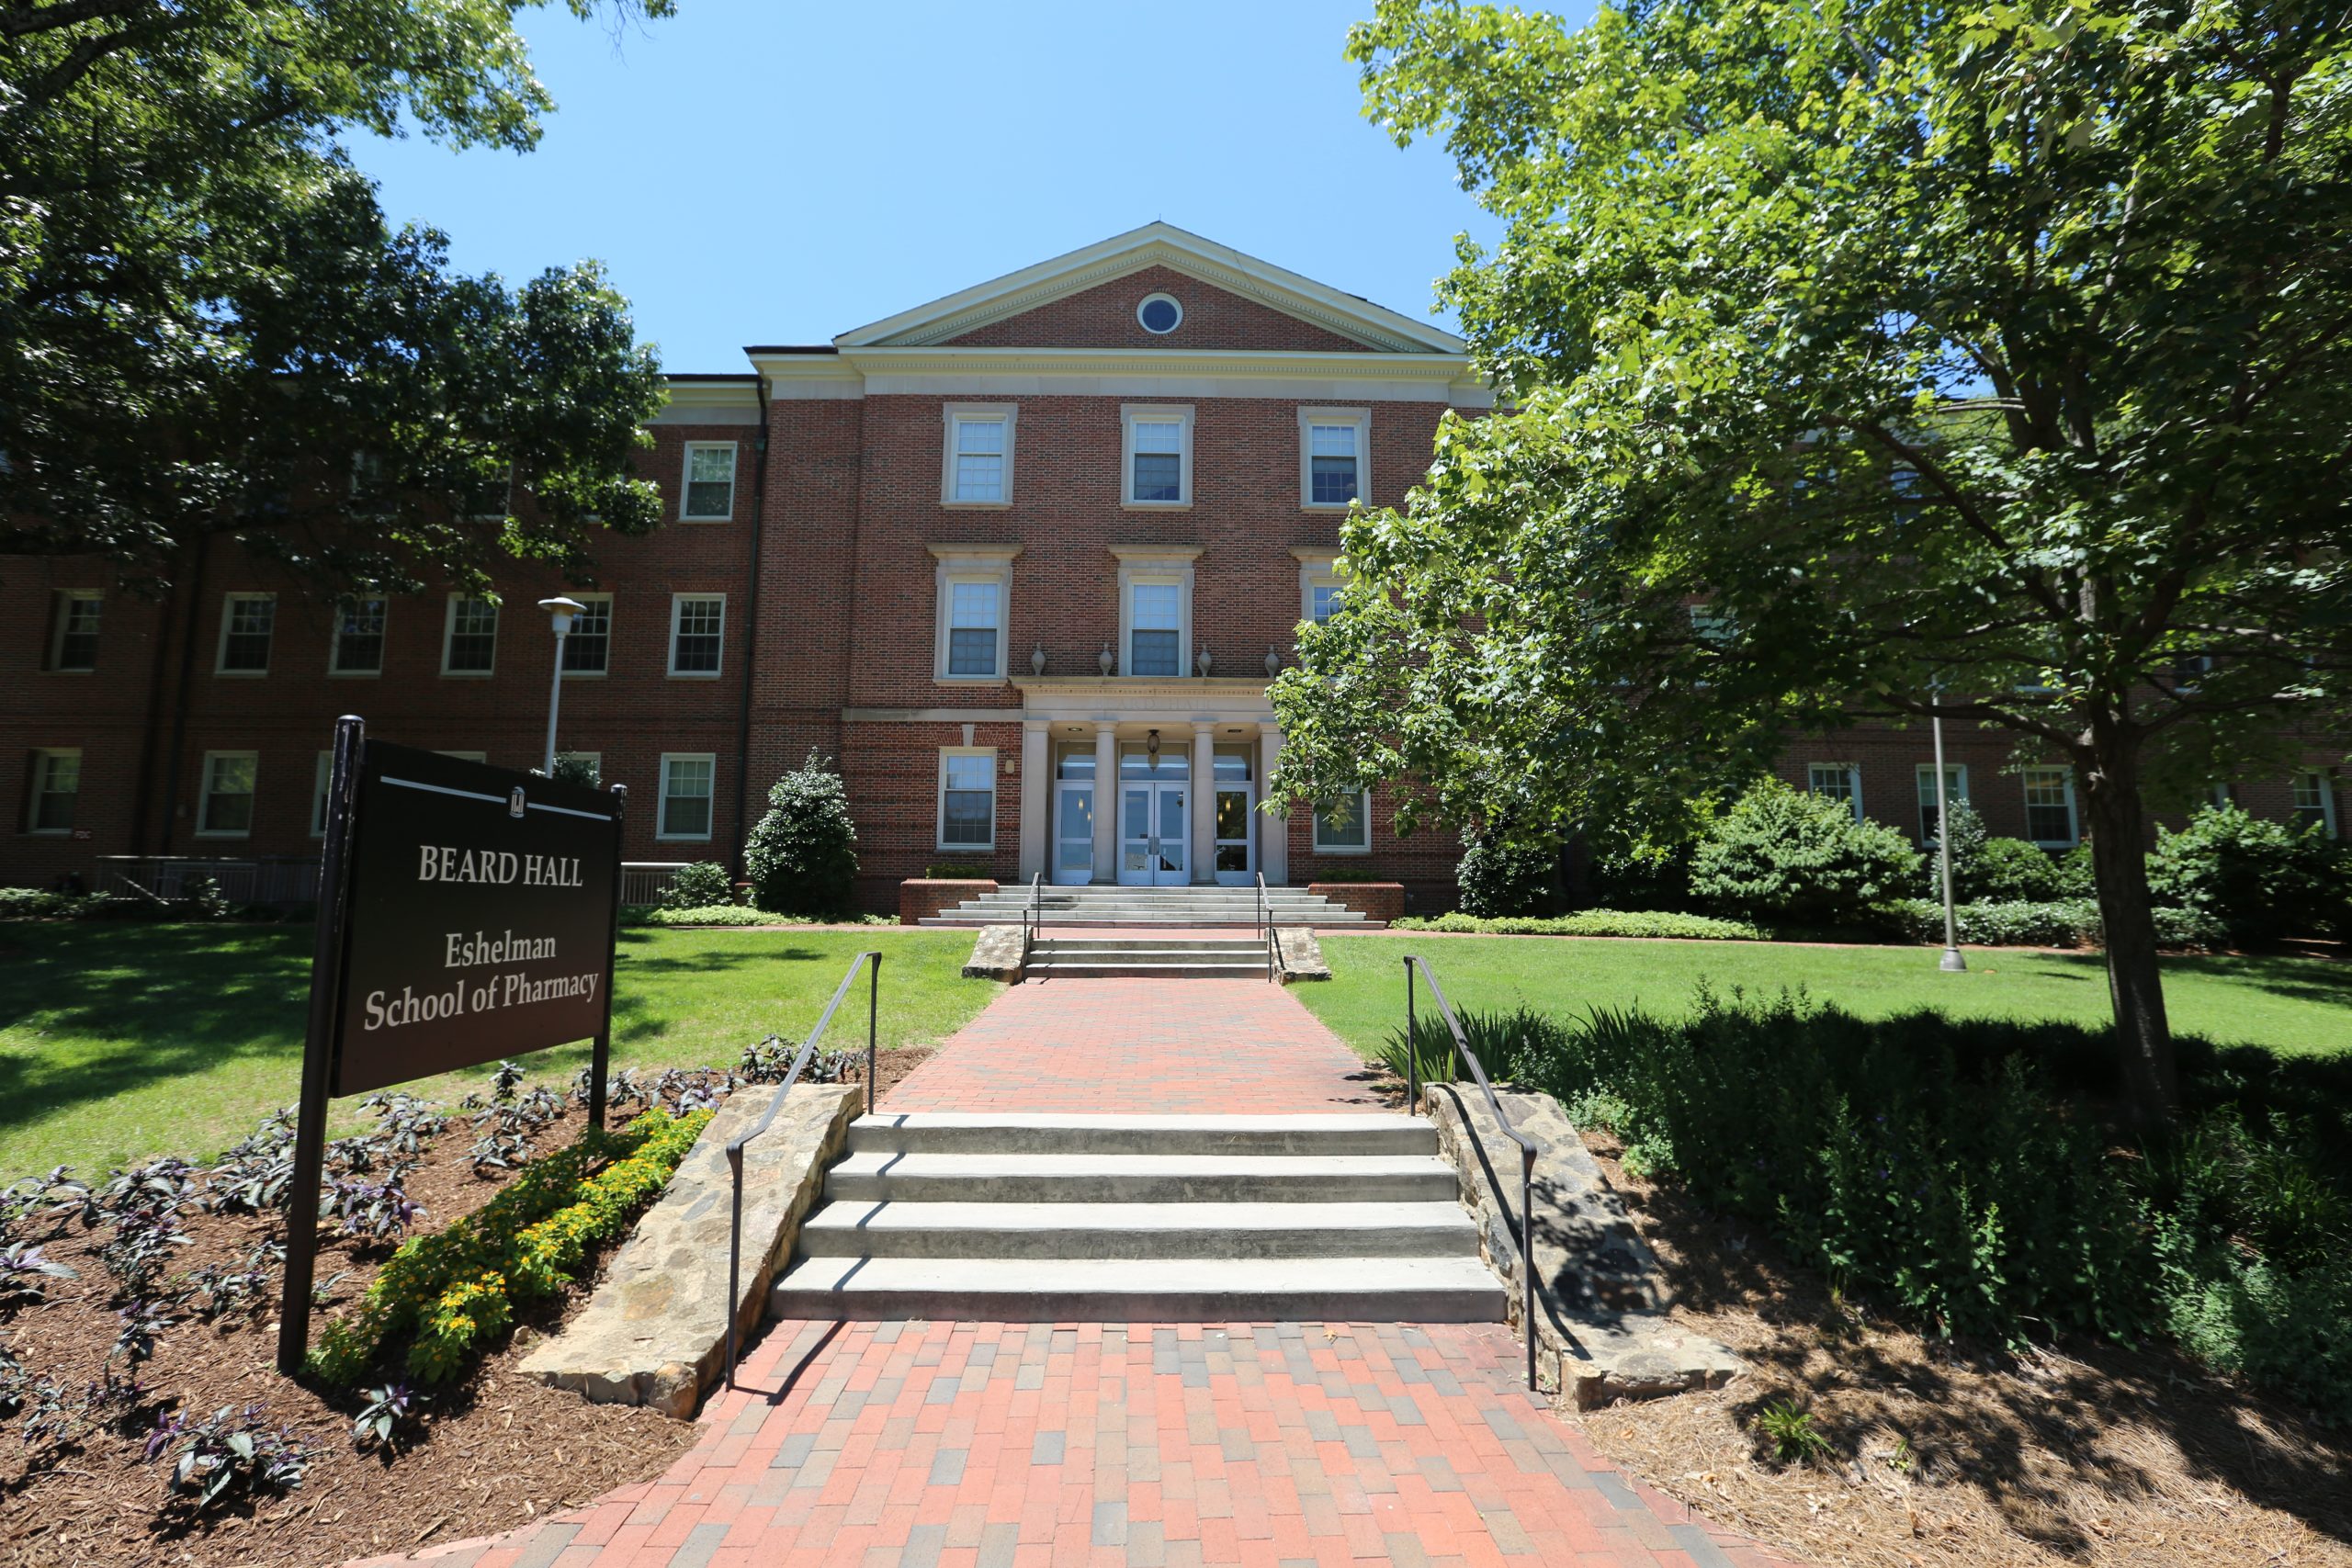 Beard Hall at the University of North Carolina at Chapel Hill